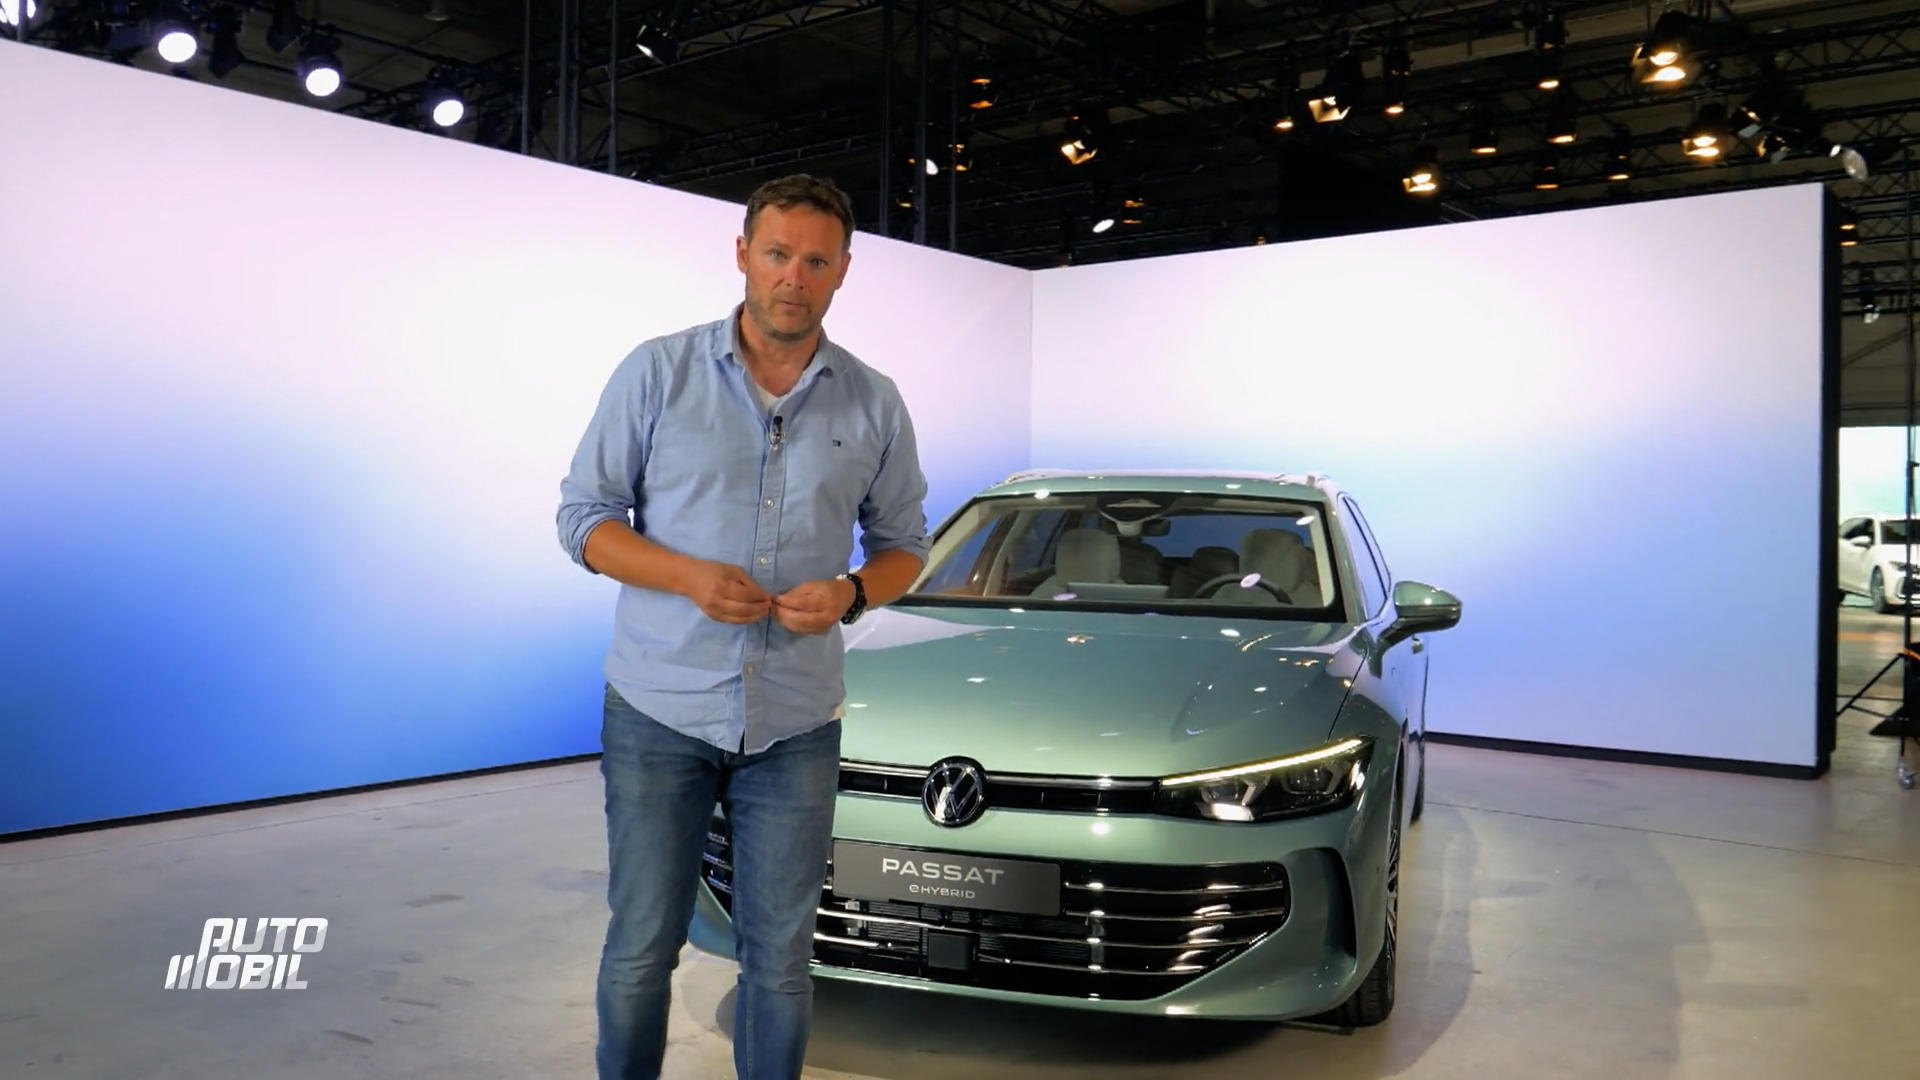 VW Passat - Die Ikone des deutschen Automobilbaus Neues Modell ist da